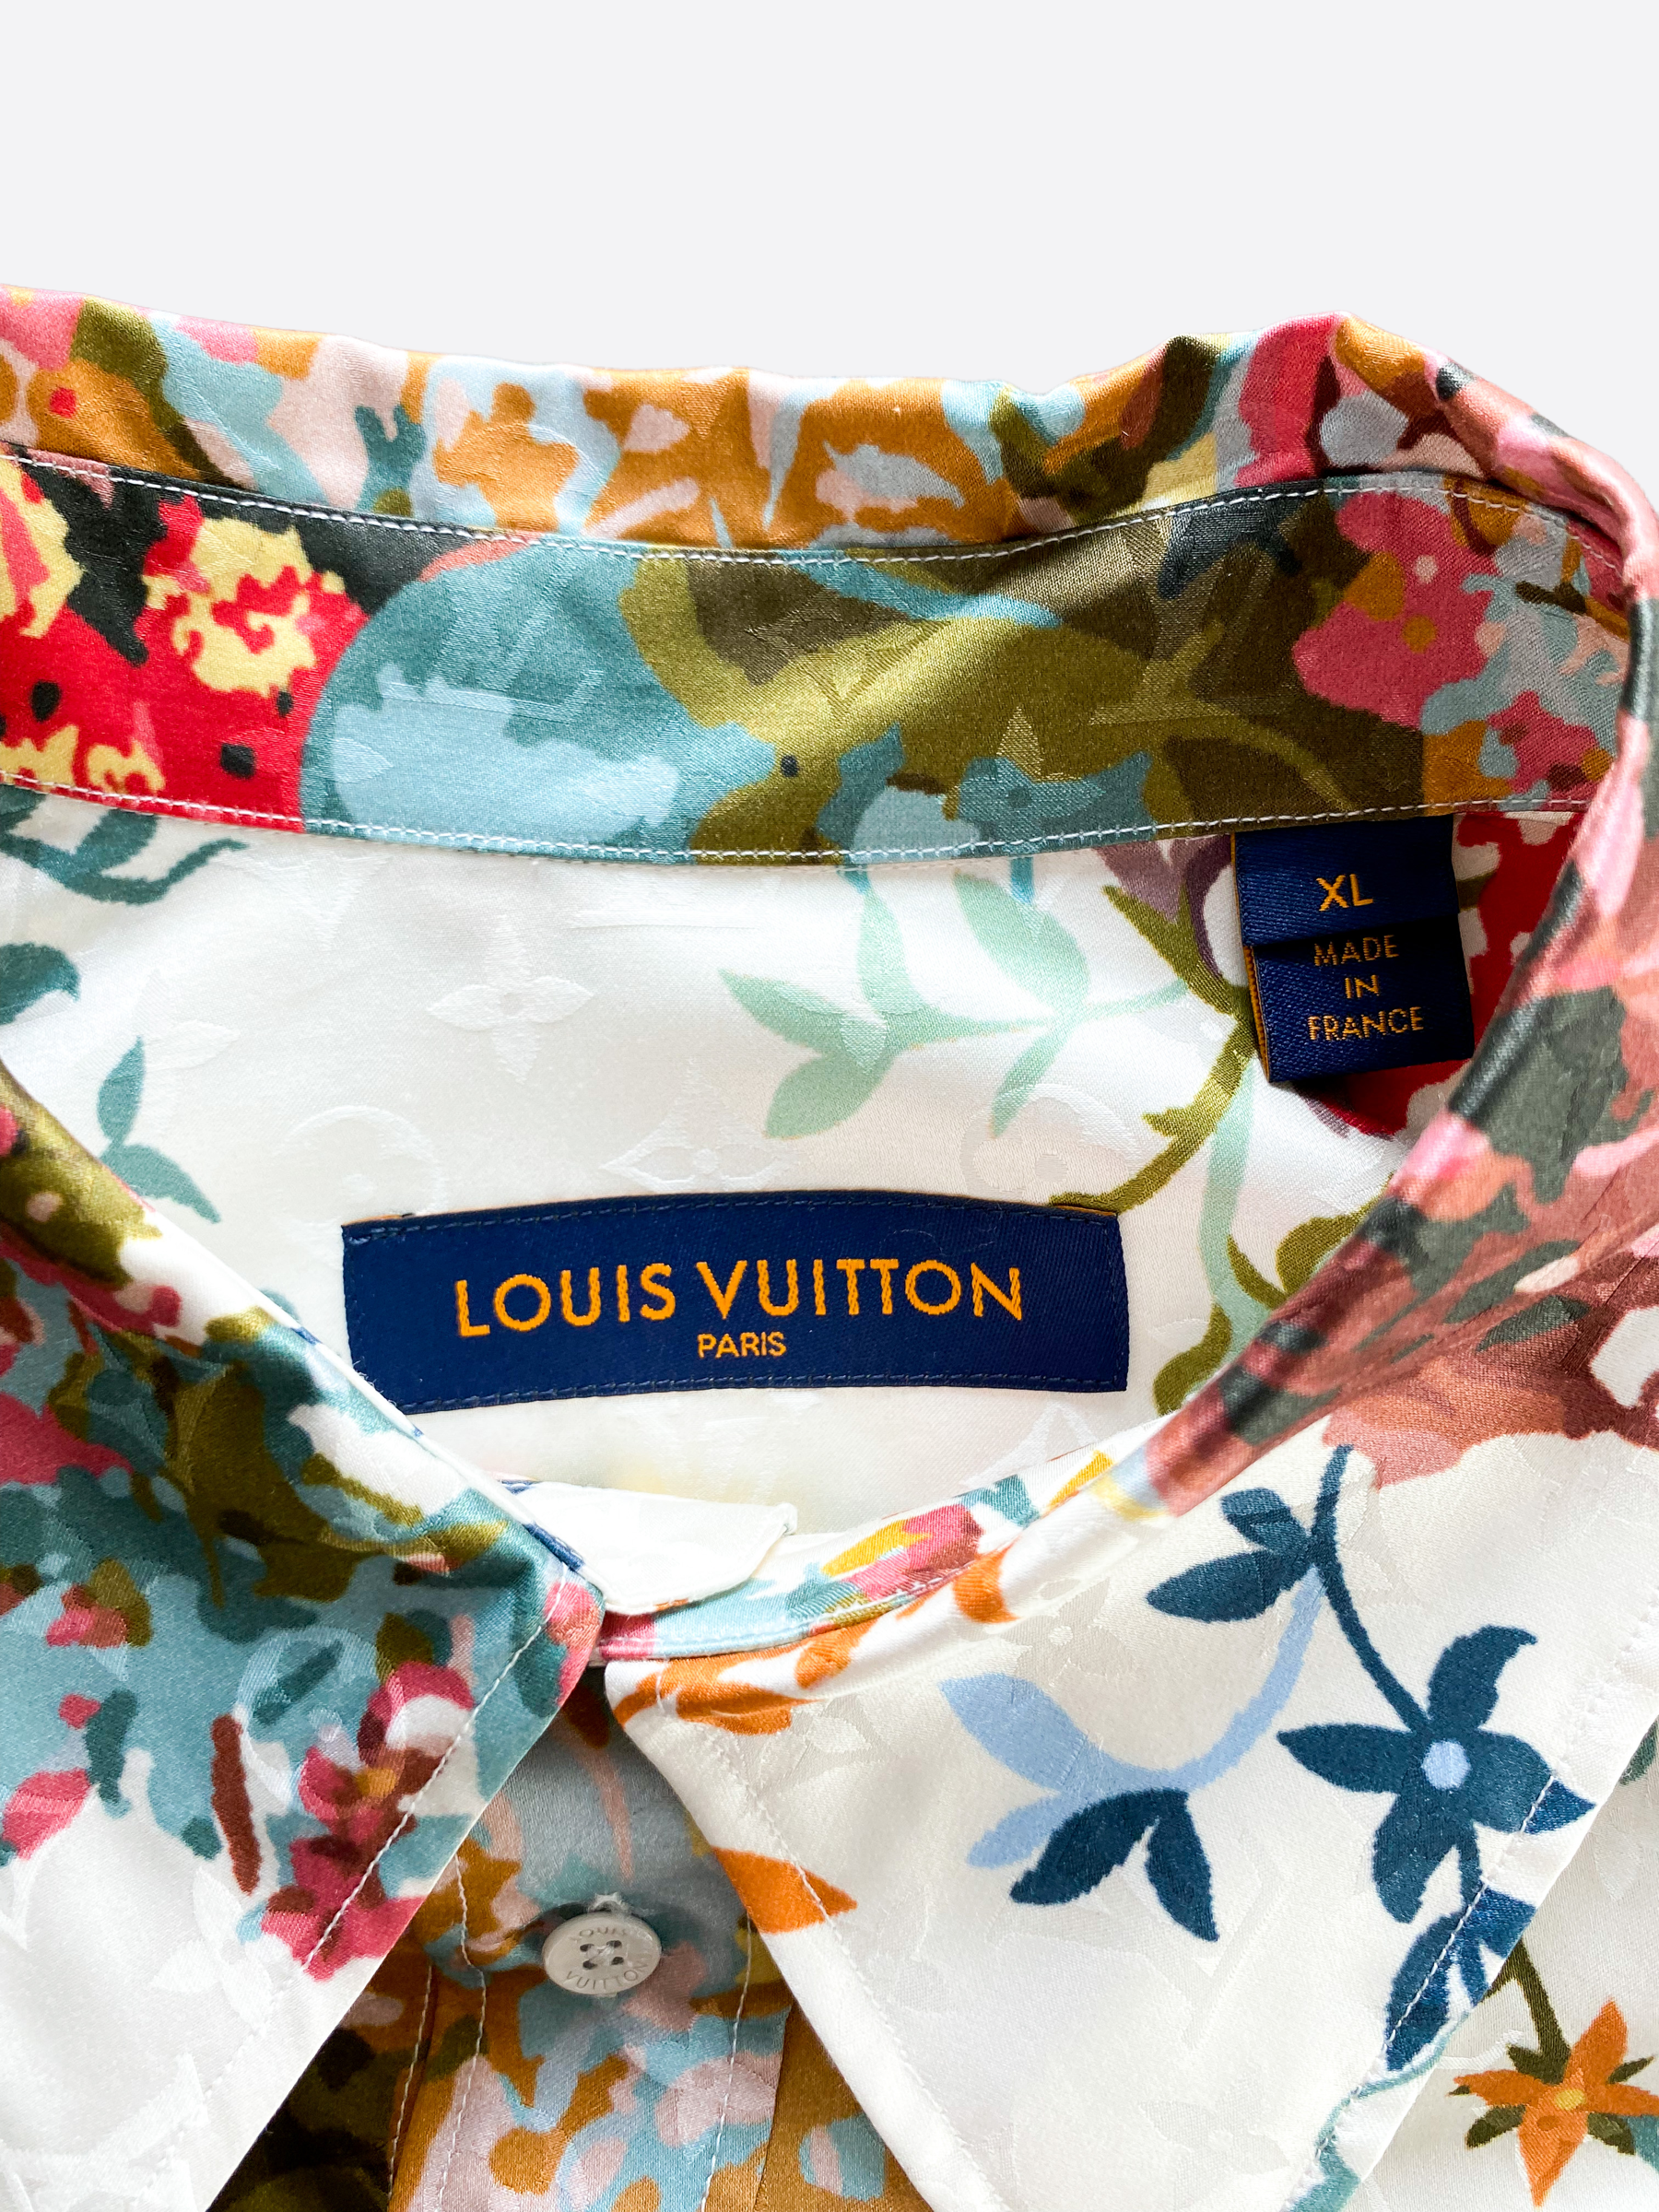 Louis Vuitton Button Up Shirt